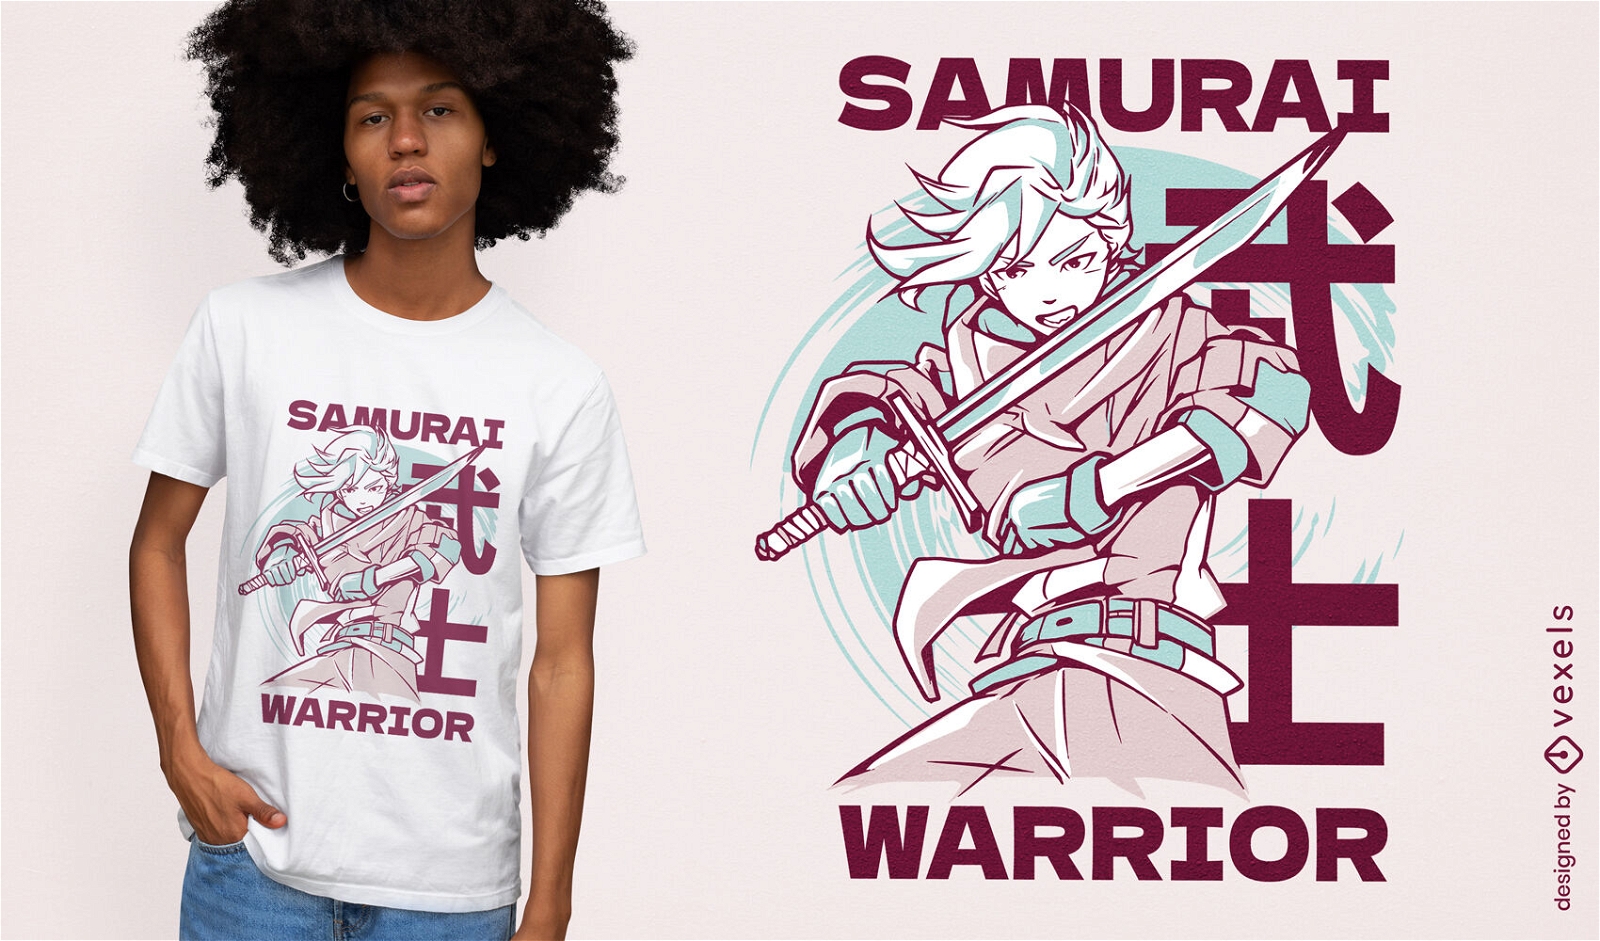 Dise?o de camiseta de anime samurai warrior